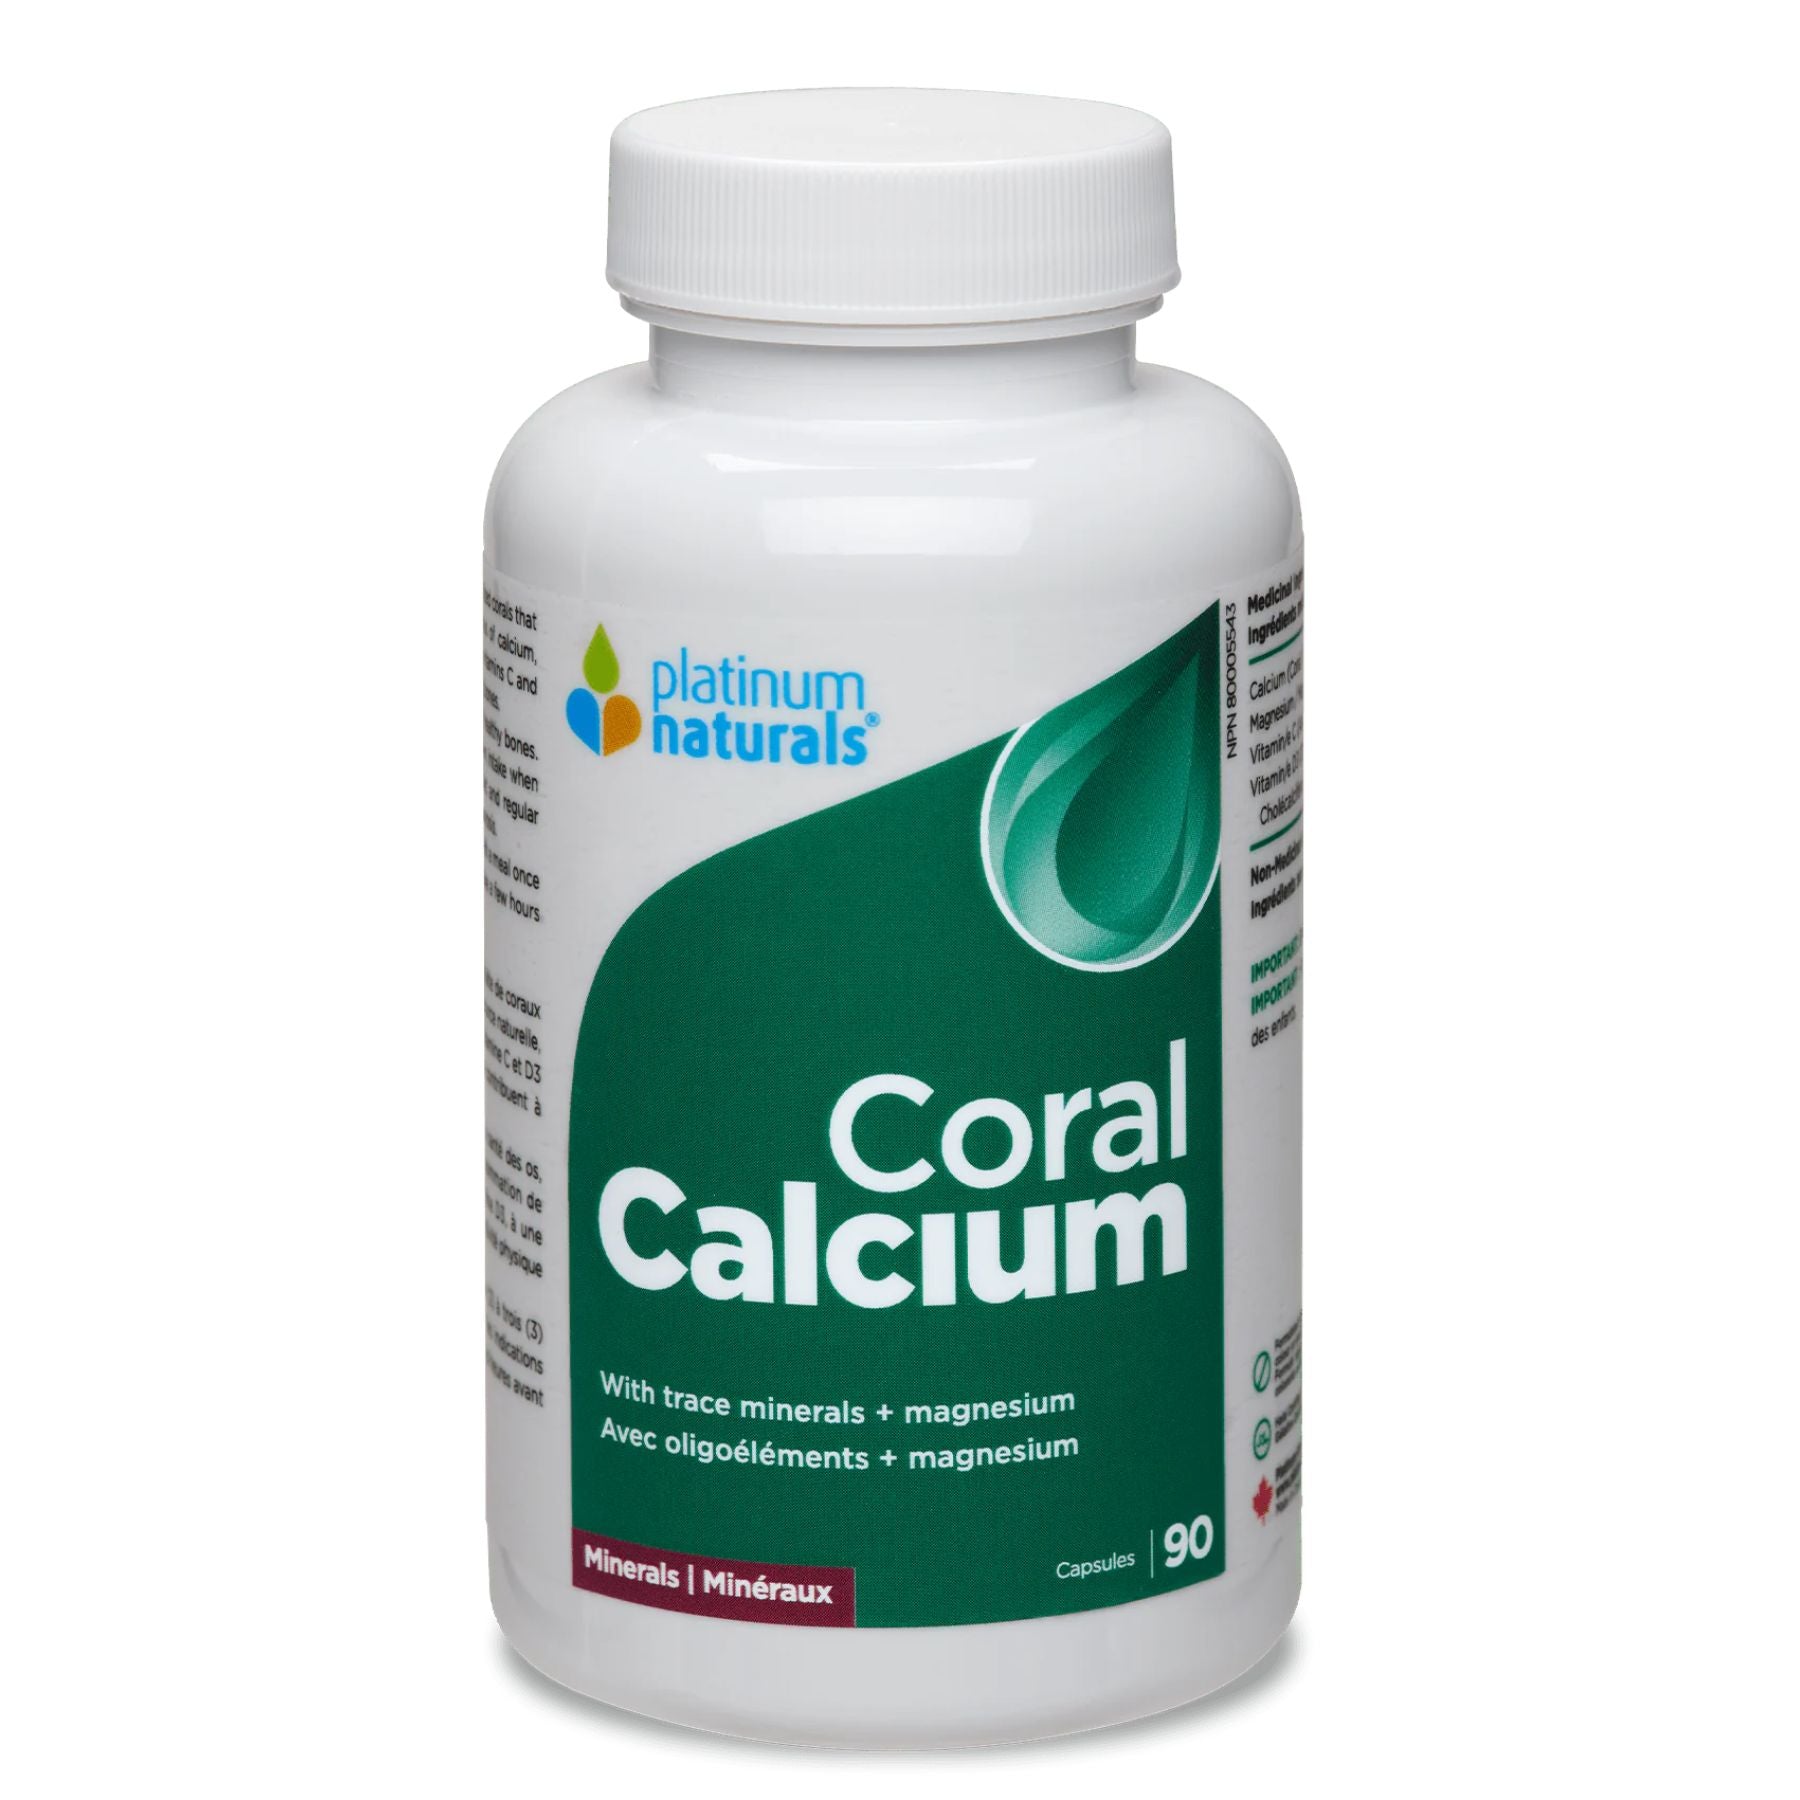 Platinum Naturals Coral Calcium 90s